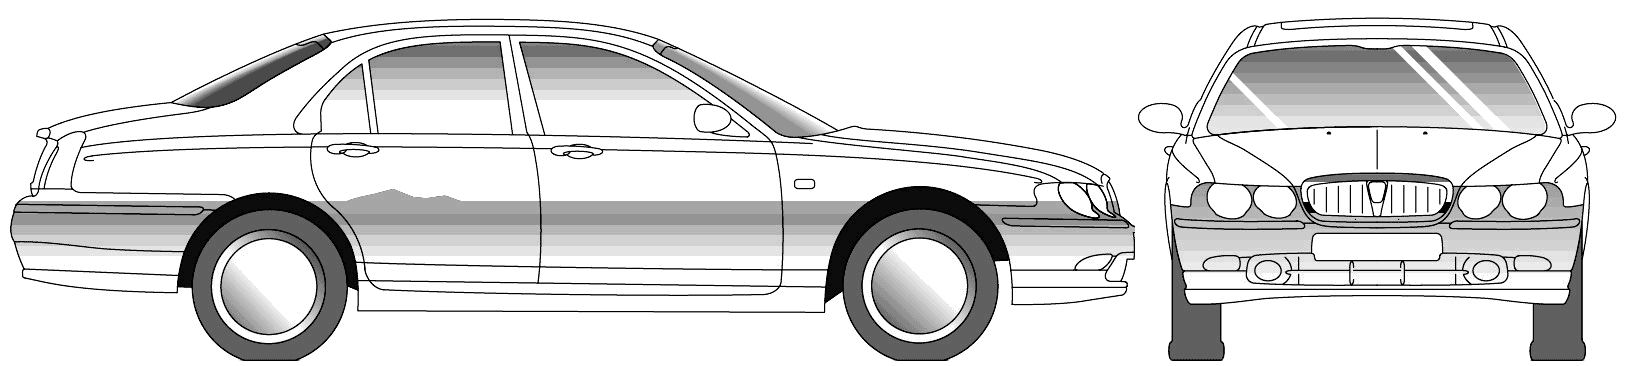 Cotxe Rover 75 2001